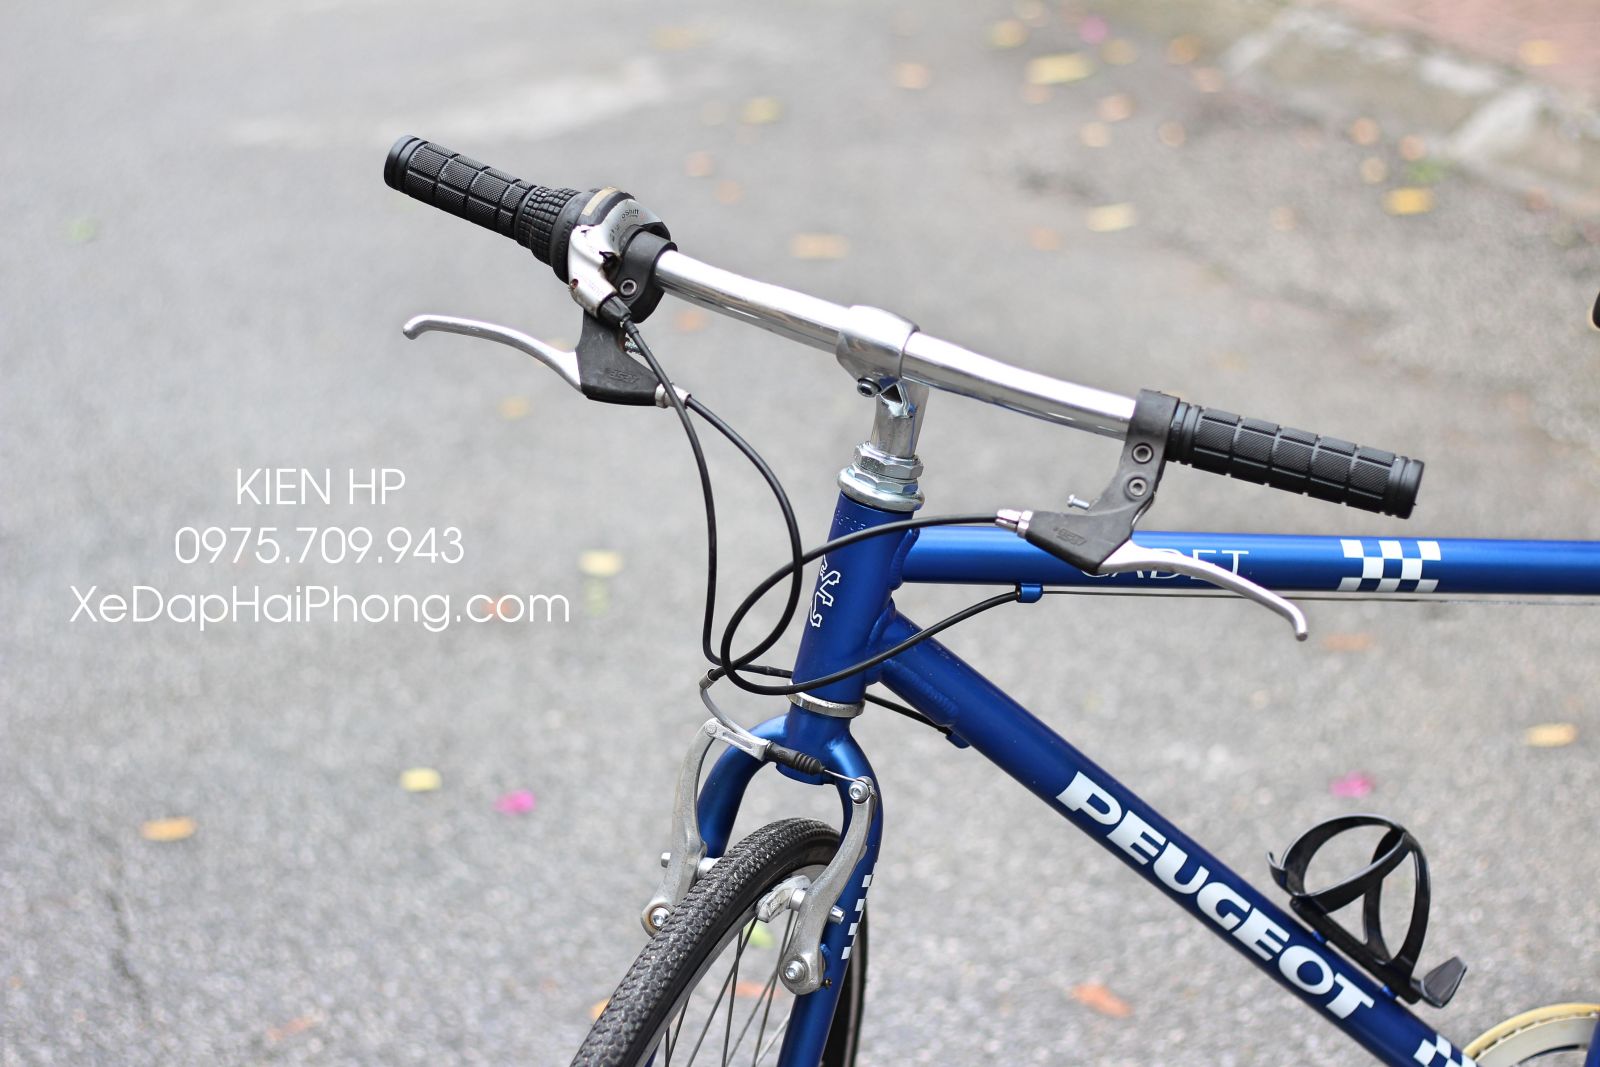 Xe đạp Peugeot huyền thoại xe đạp Pháp nhập khẩu châu âu  16200000đ   Nhật tảo